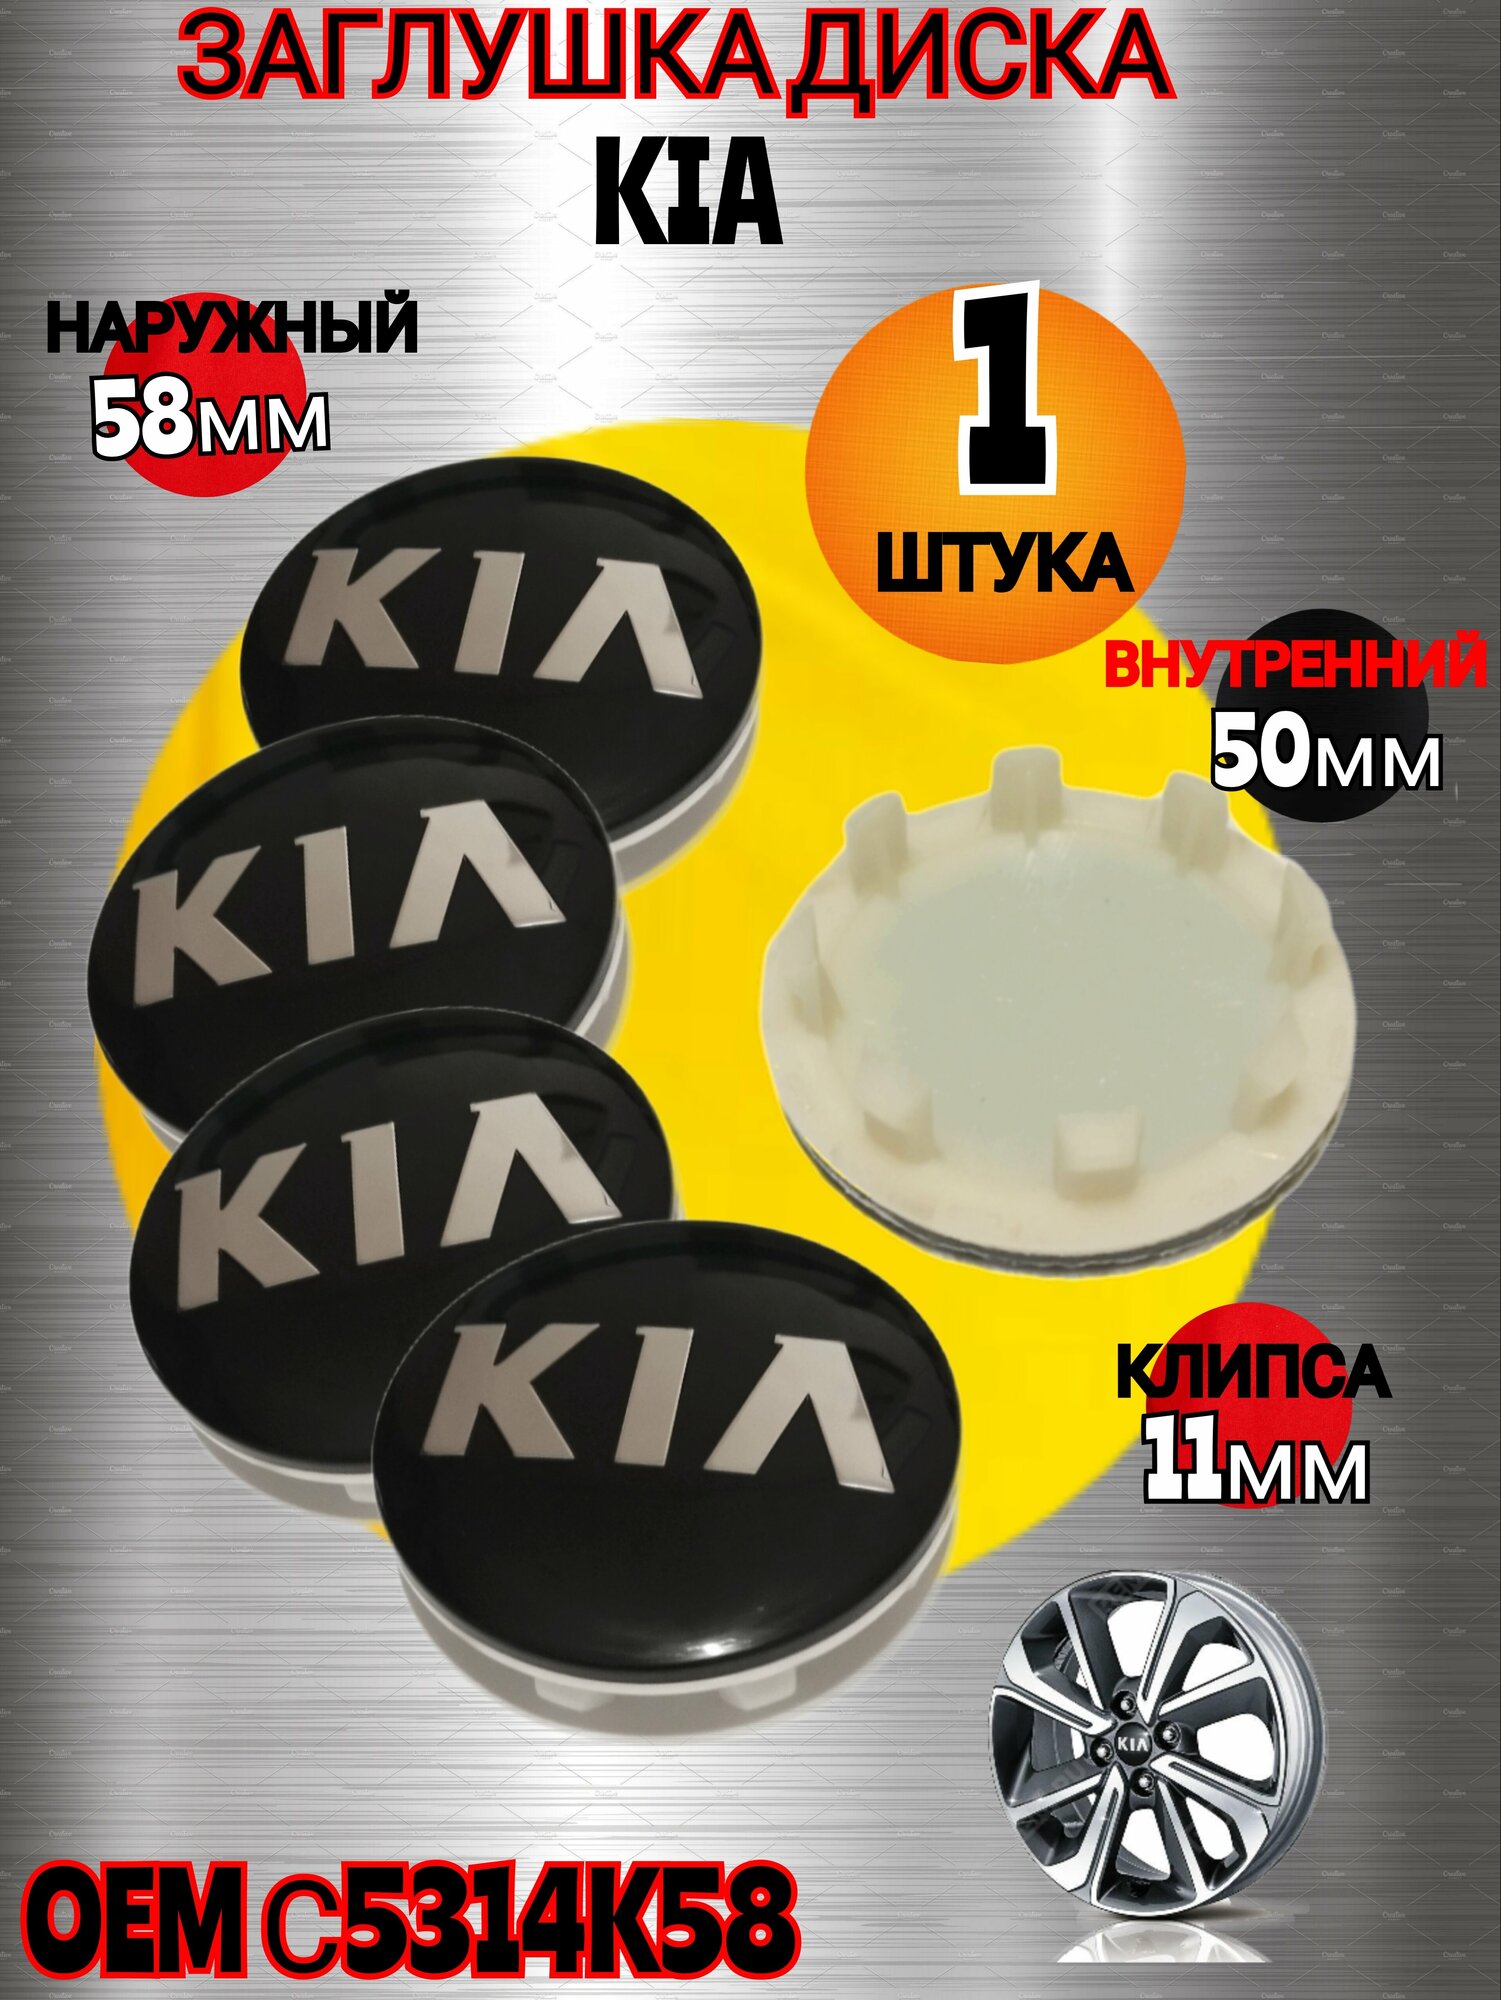 Заглушка диска/Колпачок ступицы литого диска KIA КИА 58-50 цвет черный